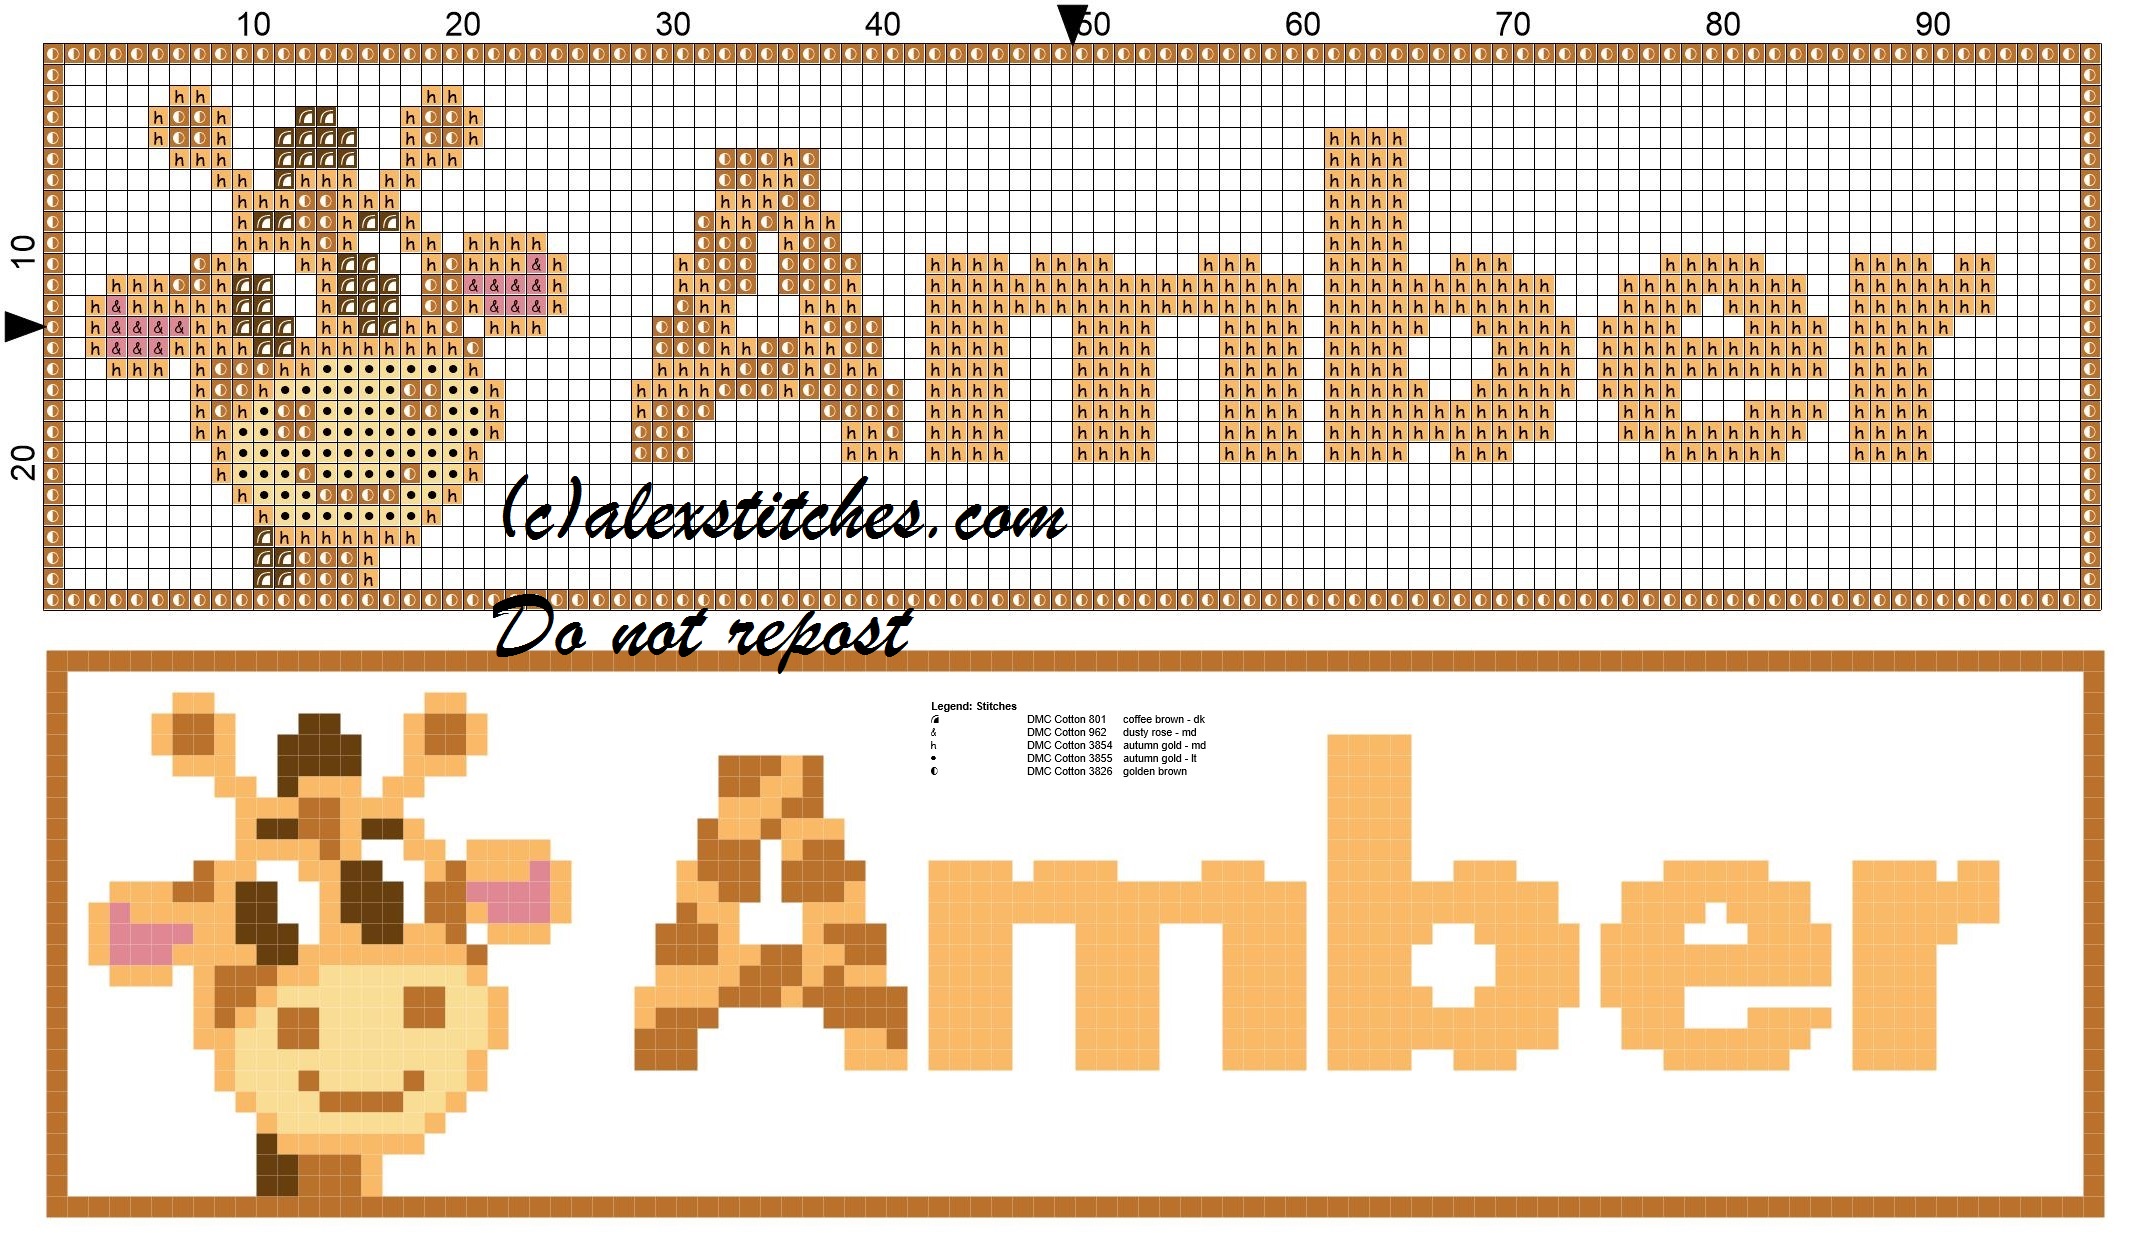 Amber name with giraffe cross stitch pattern